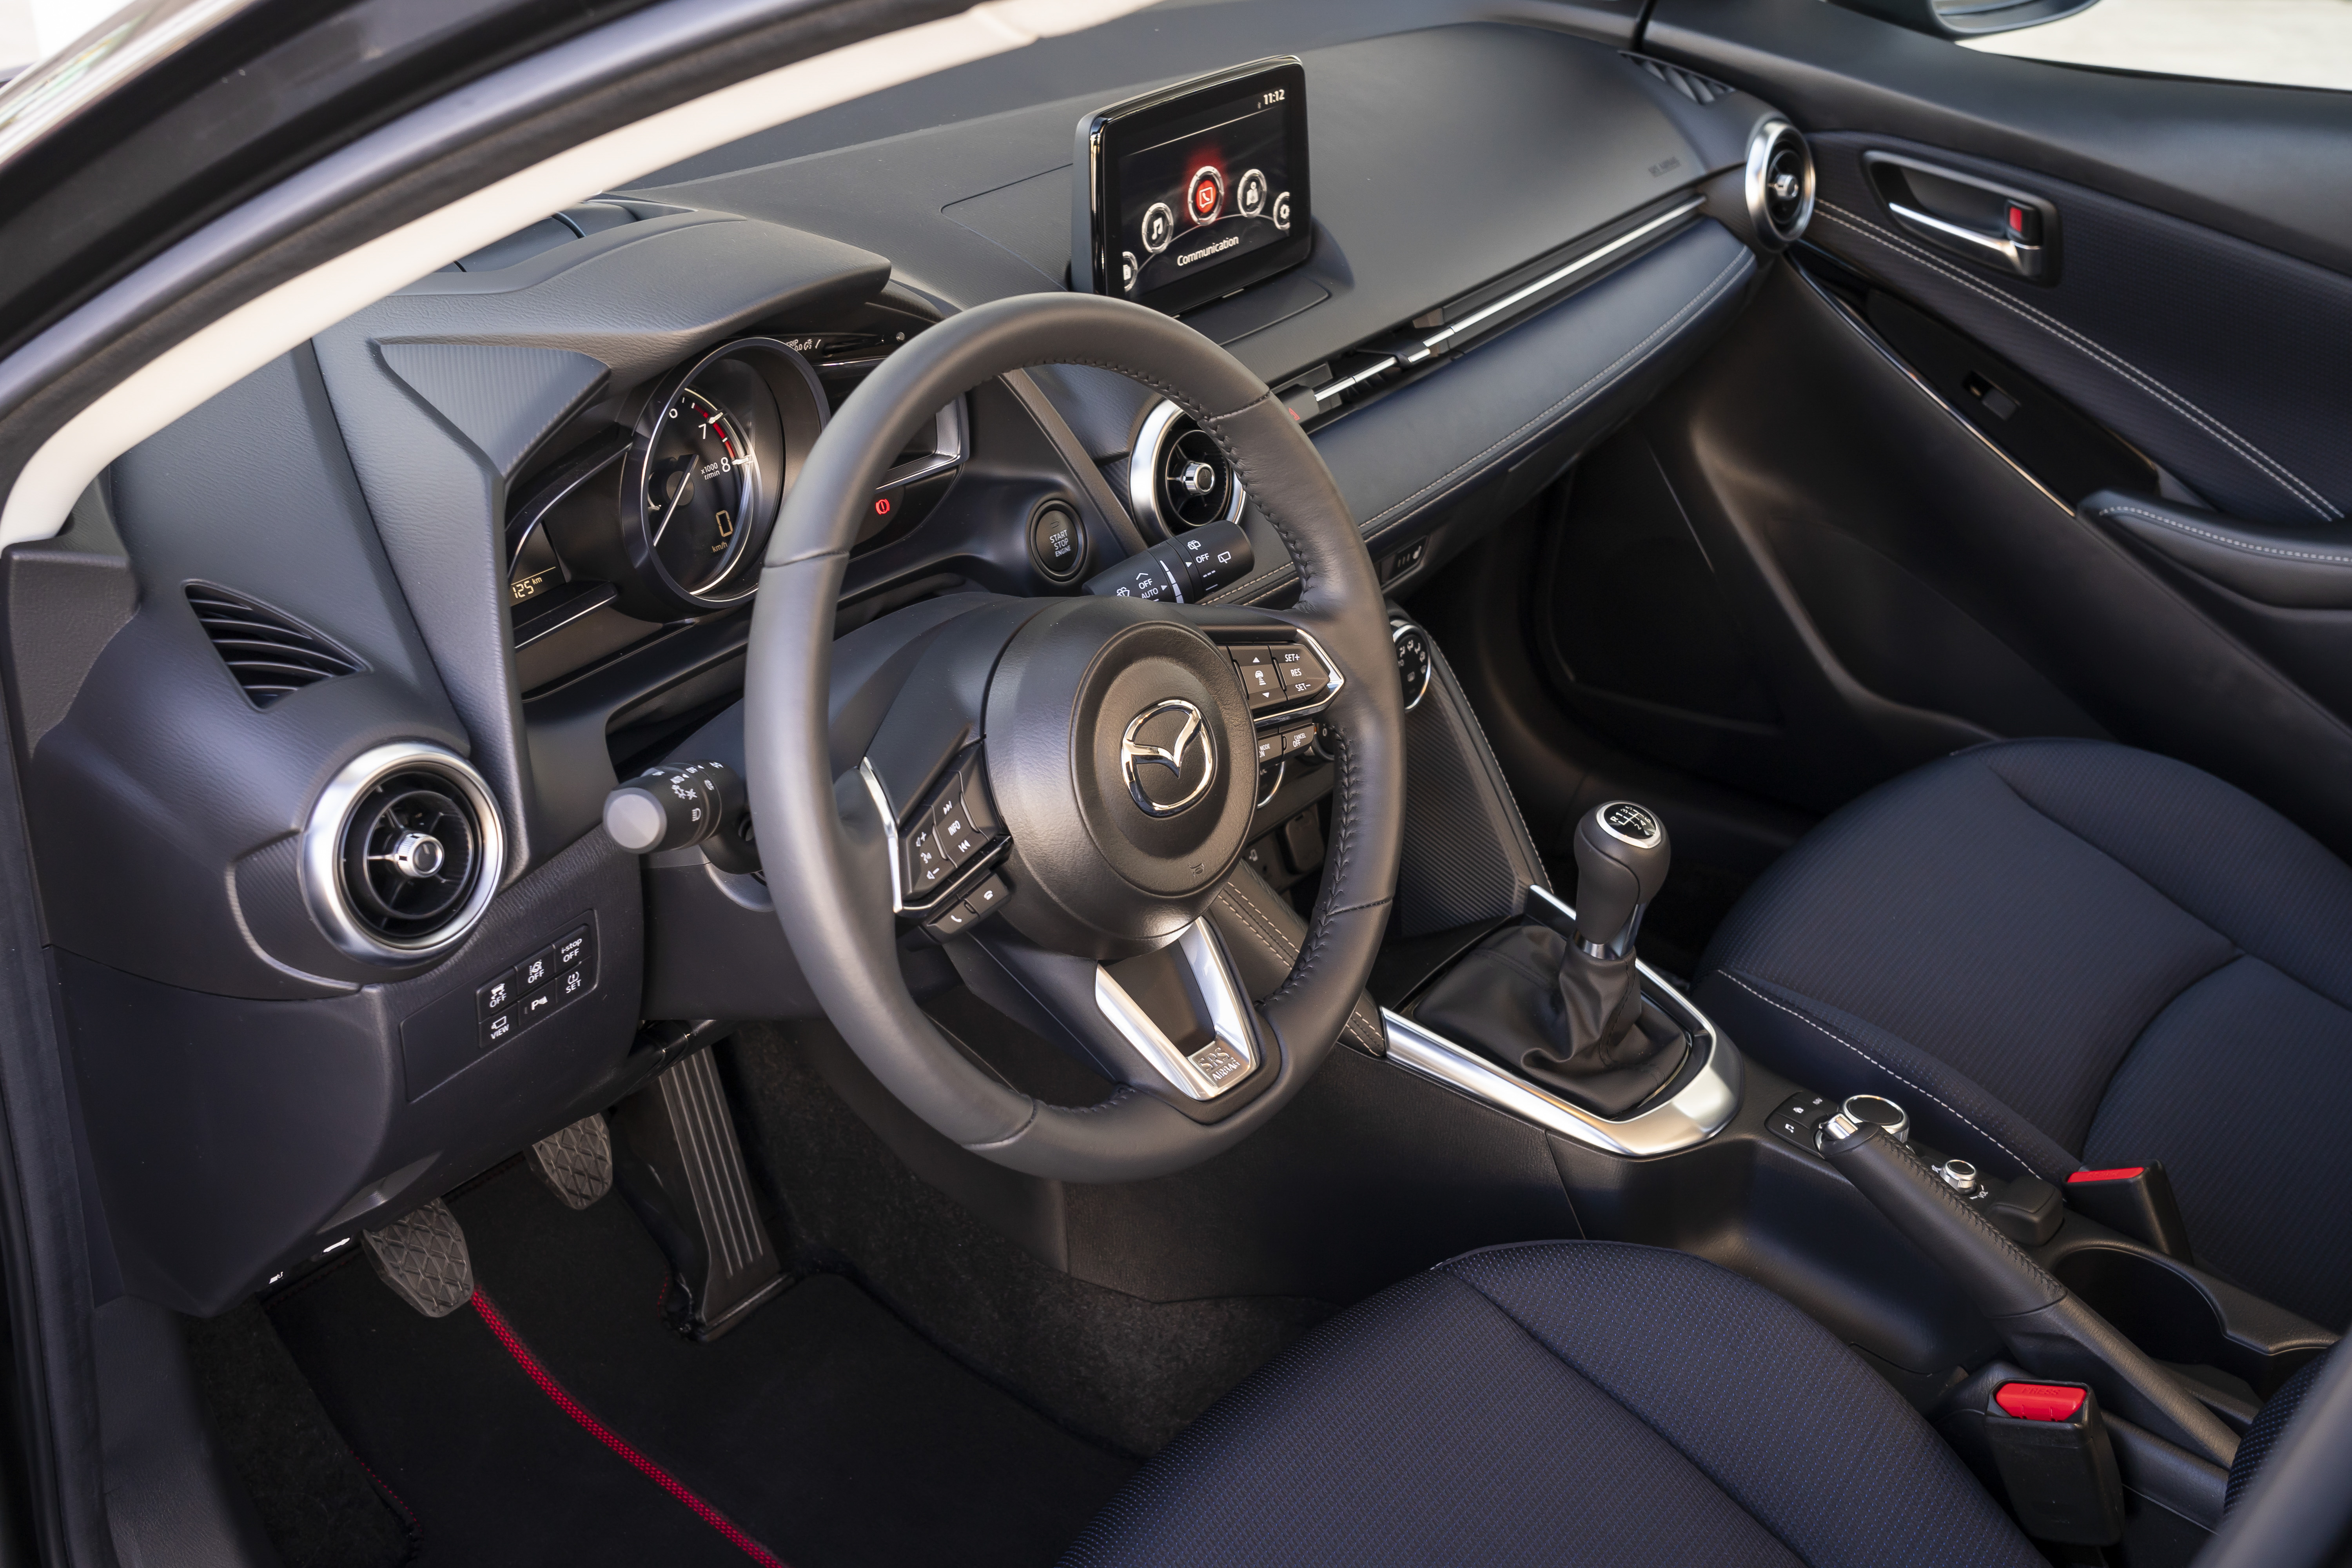 Mazda2 Facelift mit mehr Ausstattung und Mild-Hybrid – Mazda